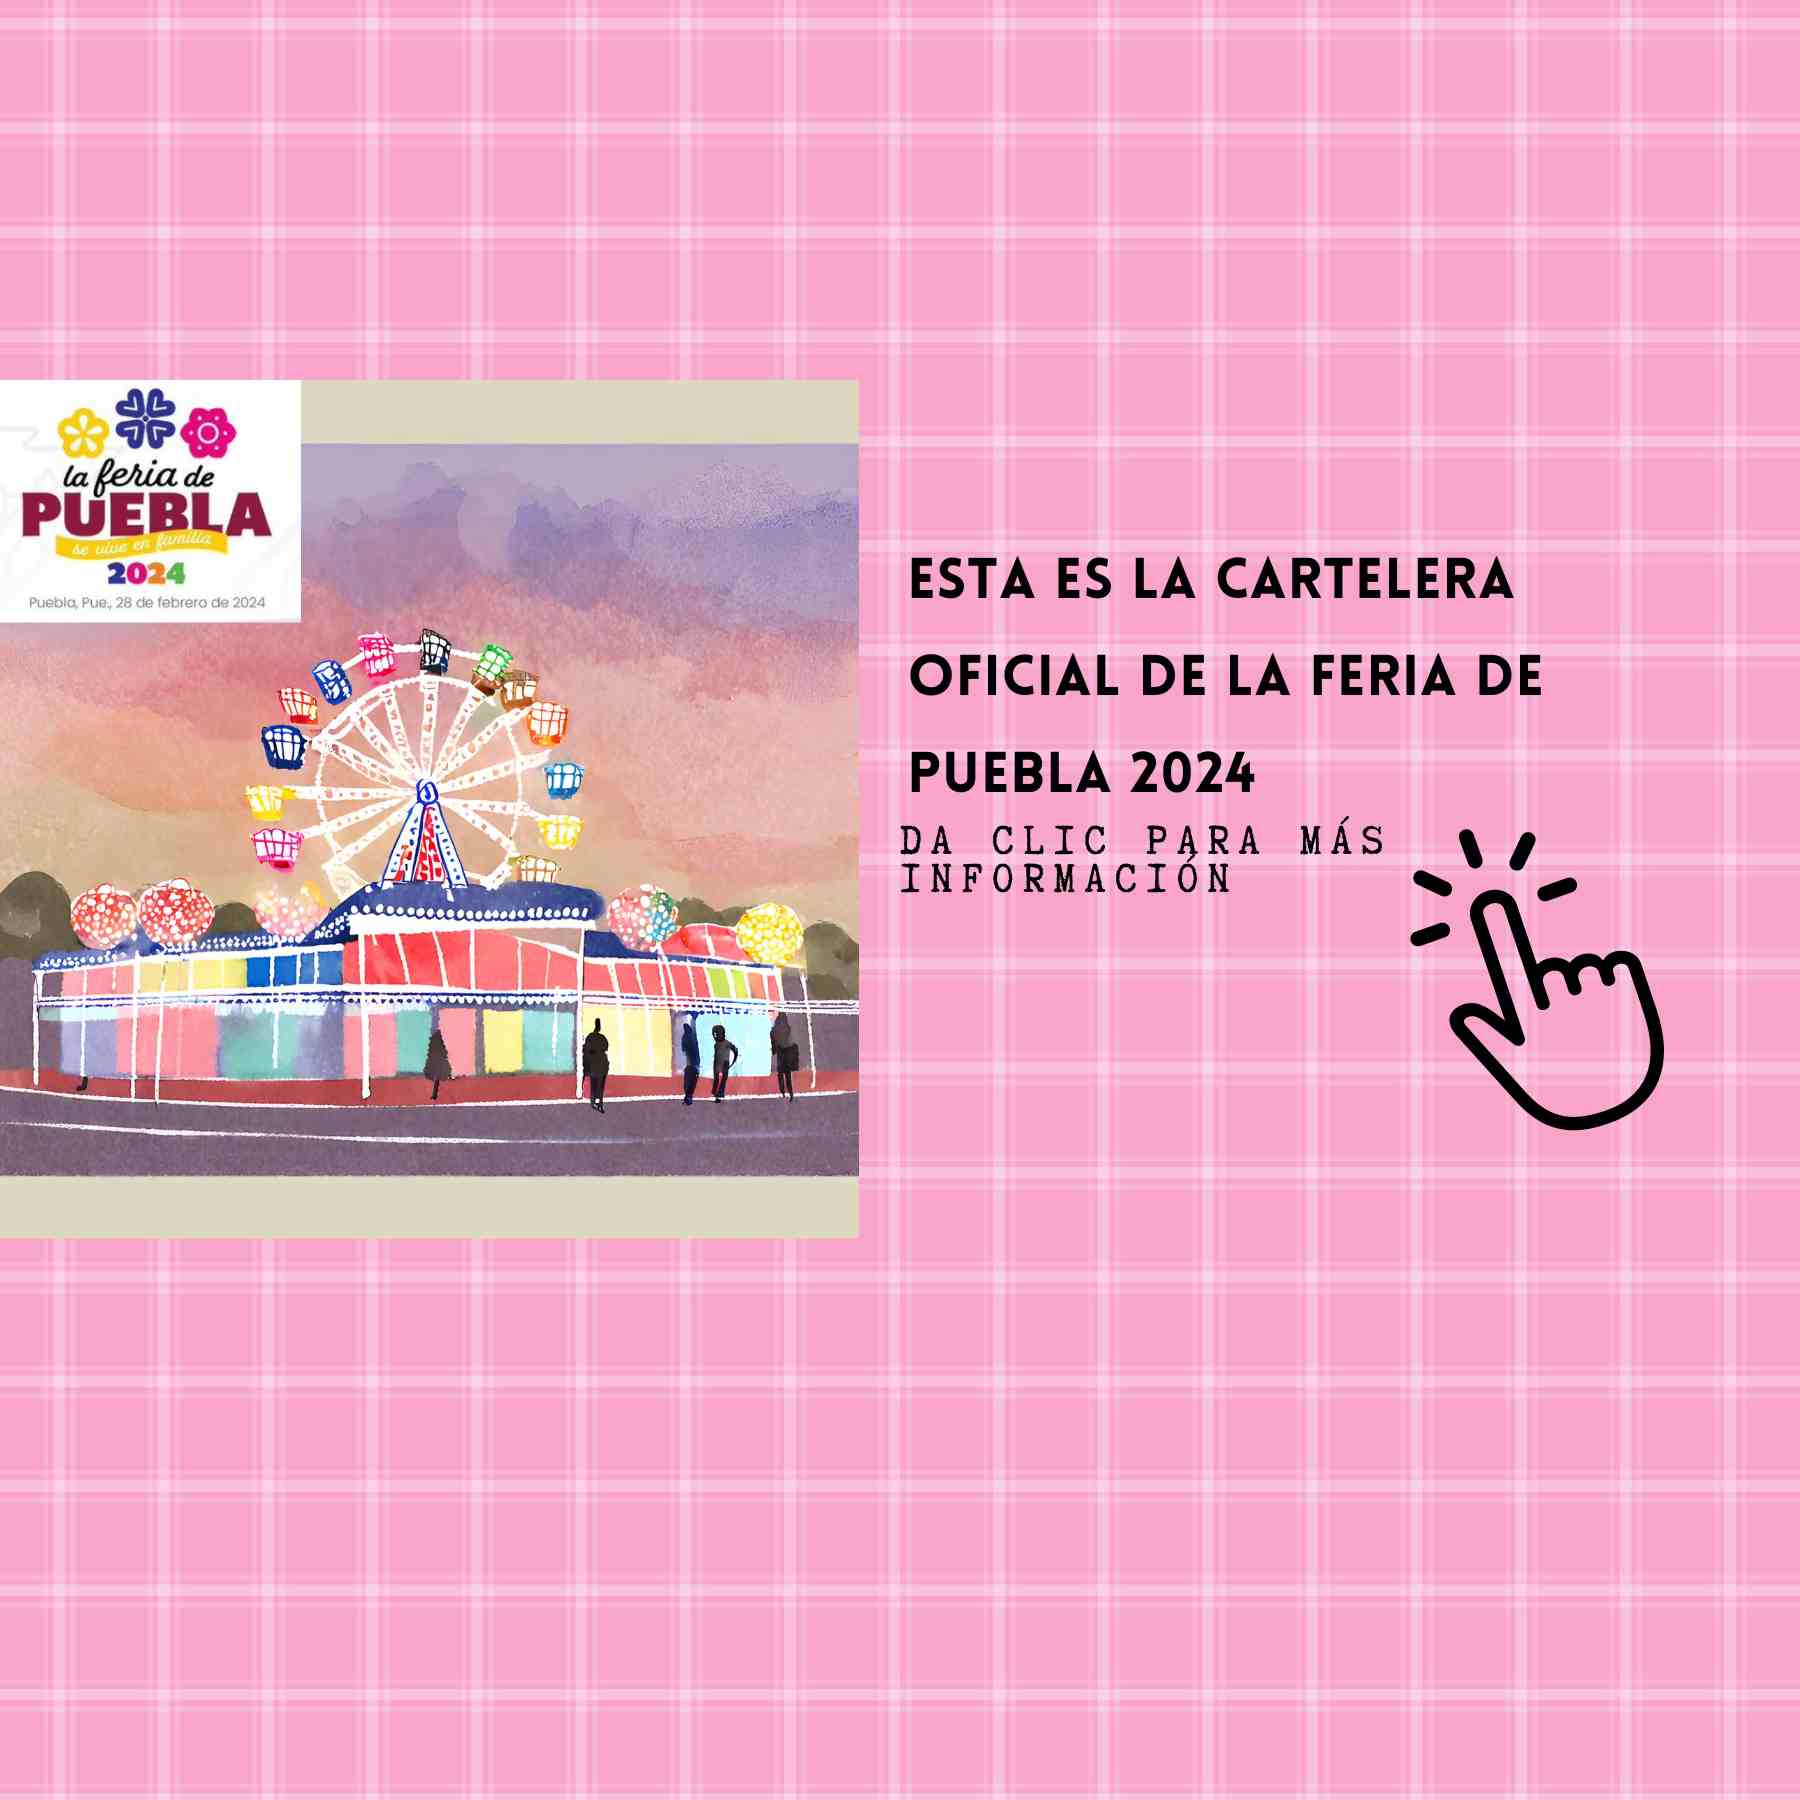 Feria de Puebla 2024 Esta es la cartelera oficial